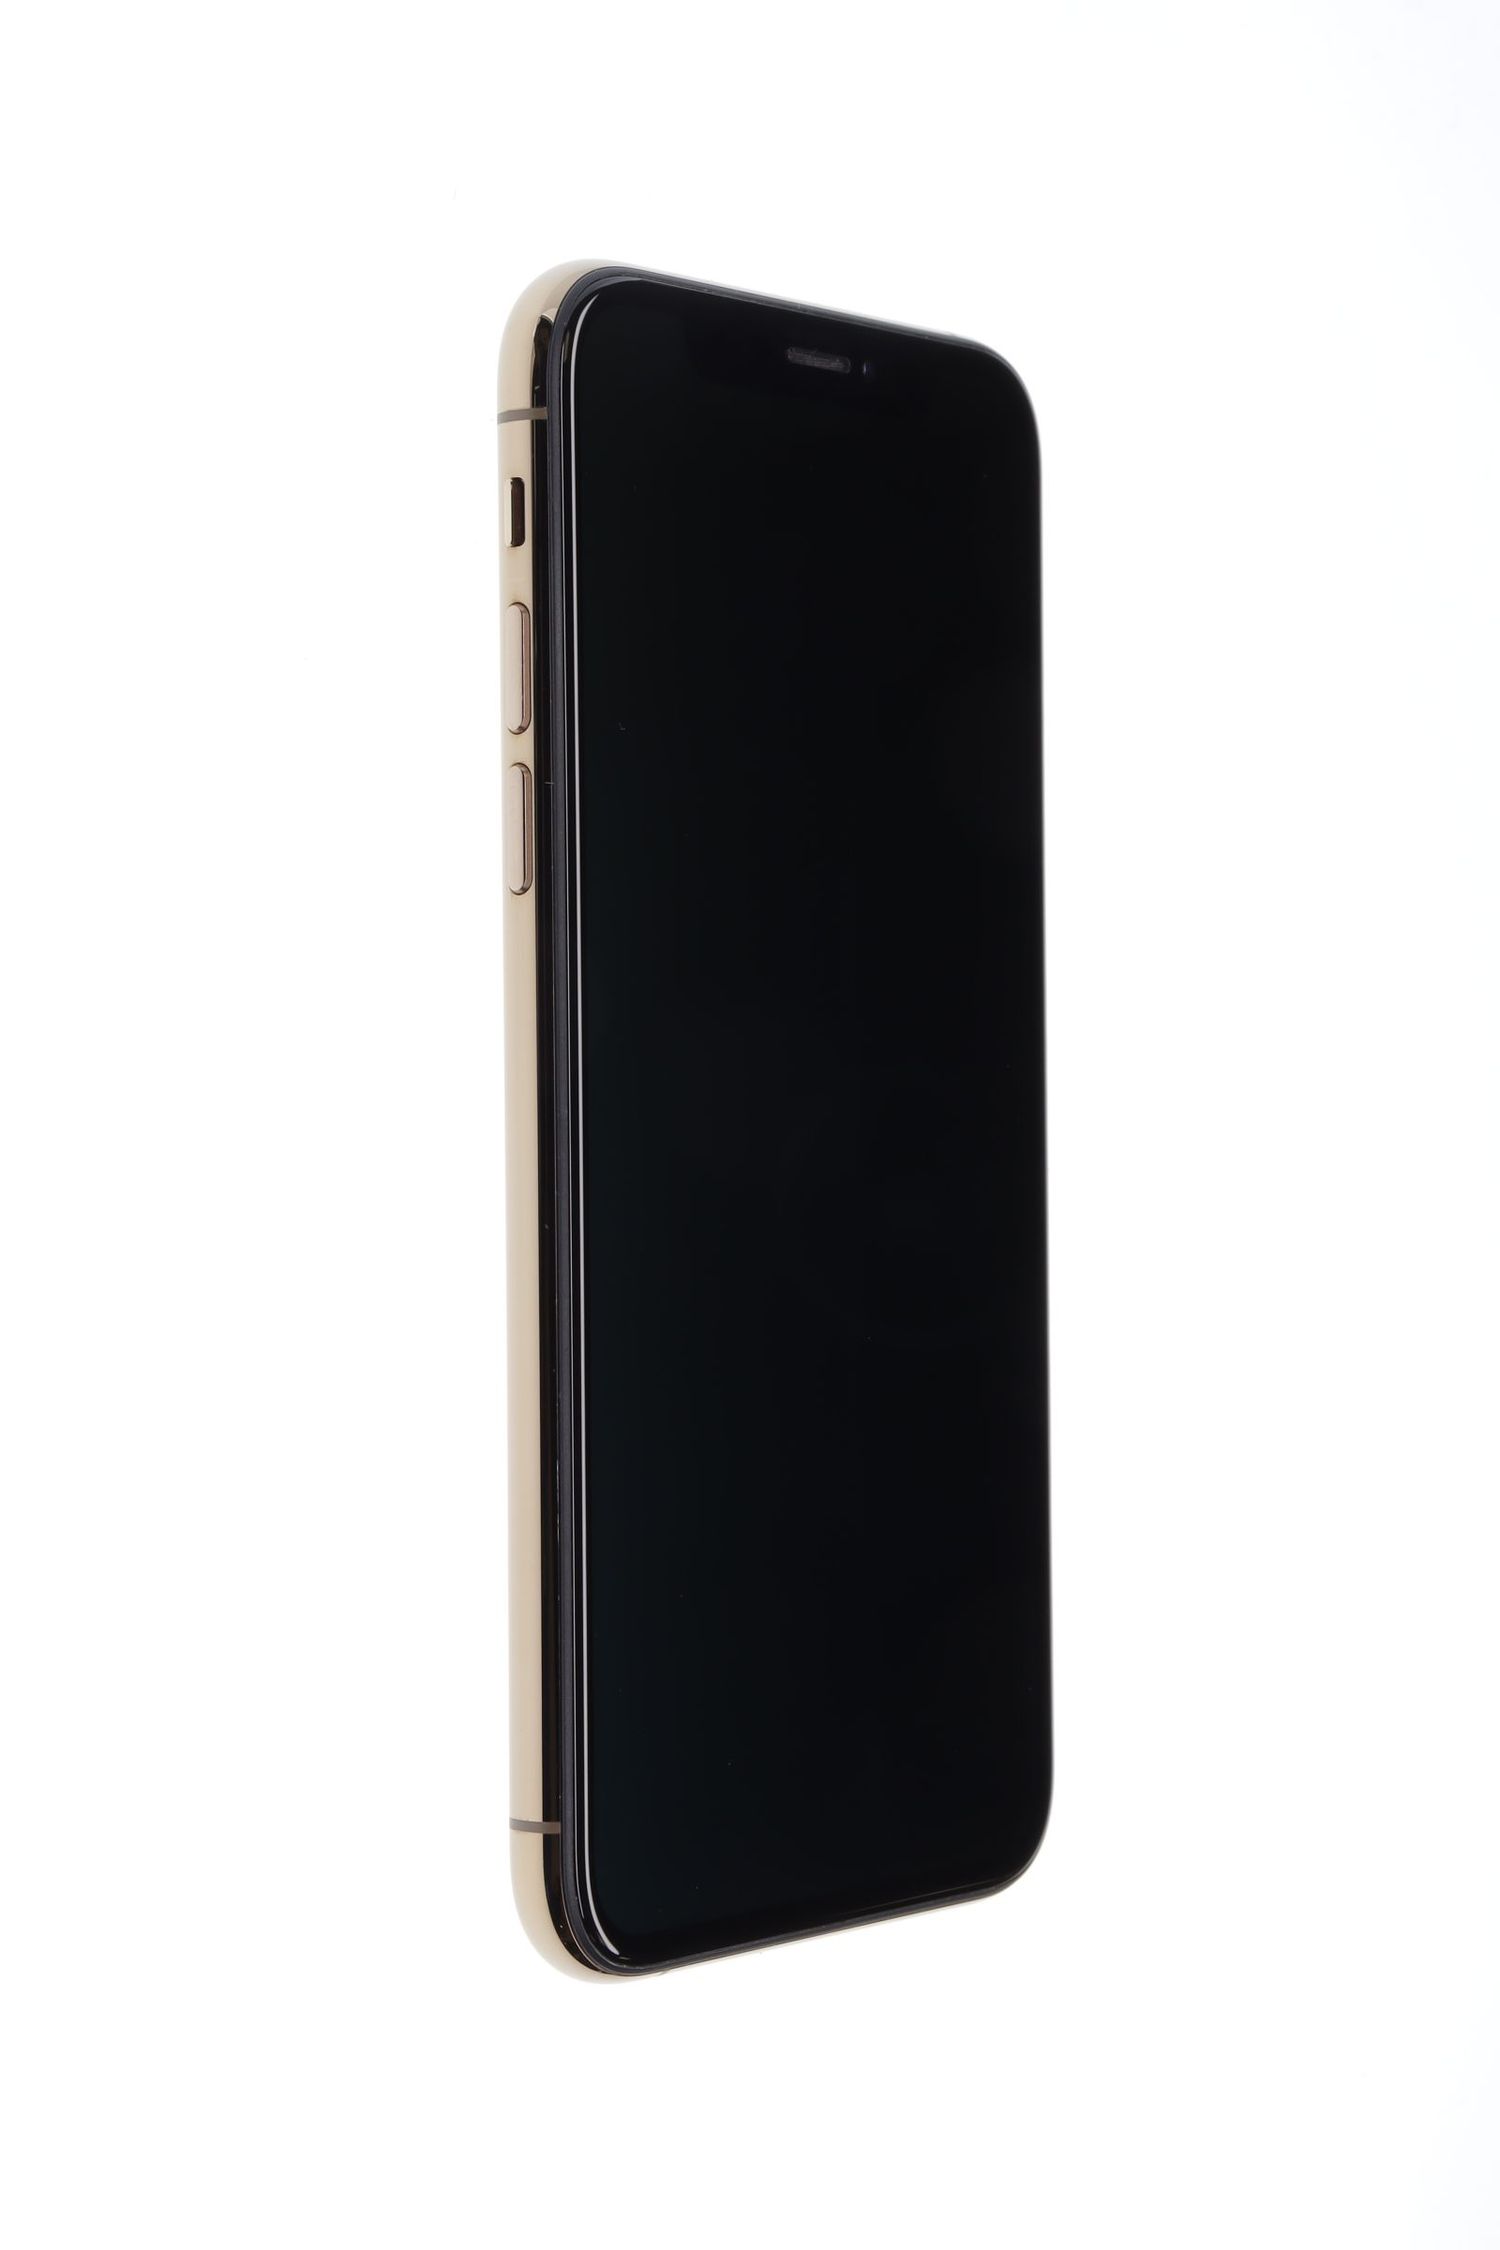 Мобилен телефон Apple iPhone XS, Gold, 256 GB, Excelent